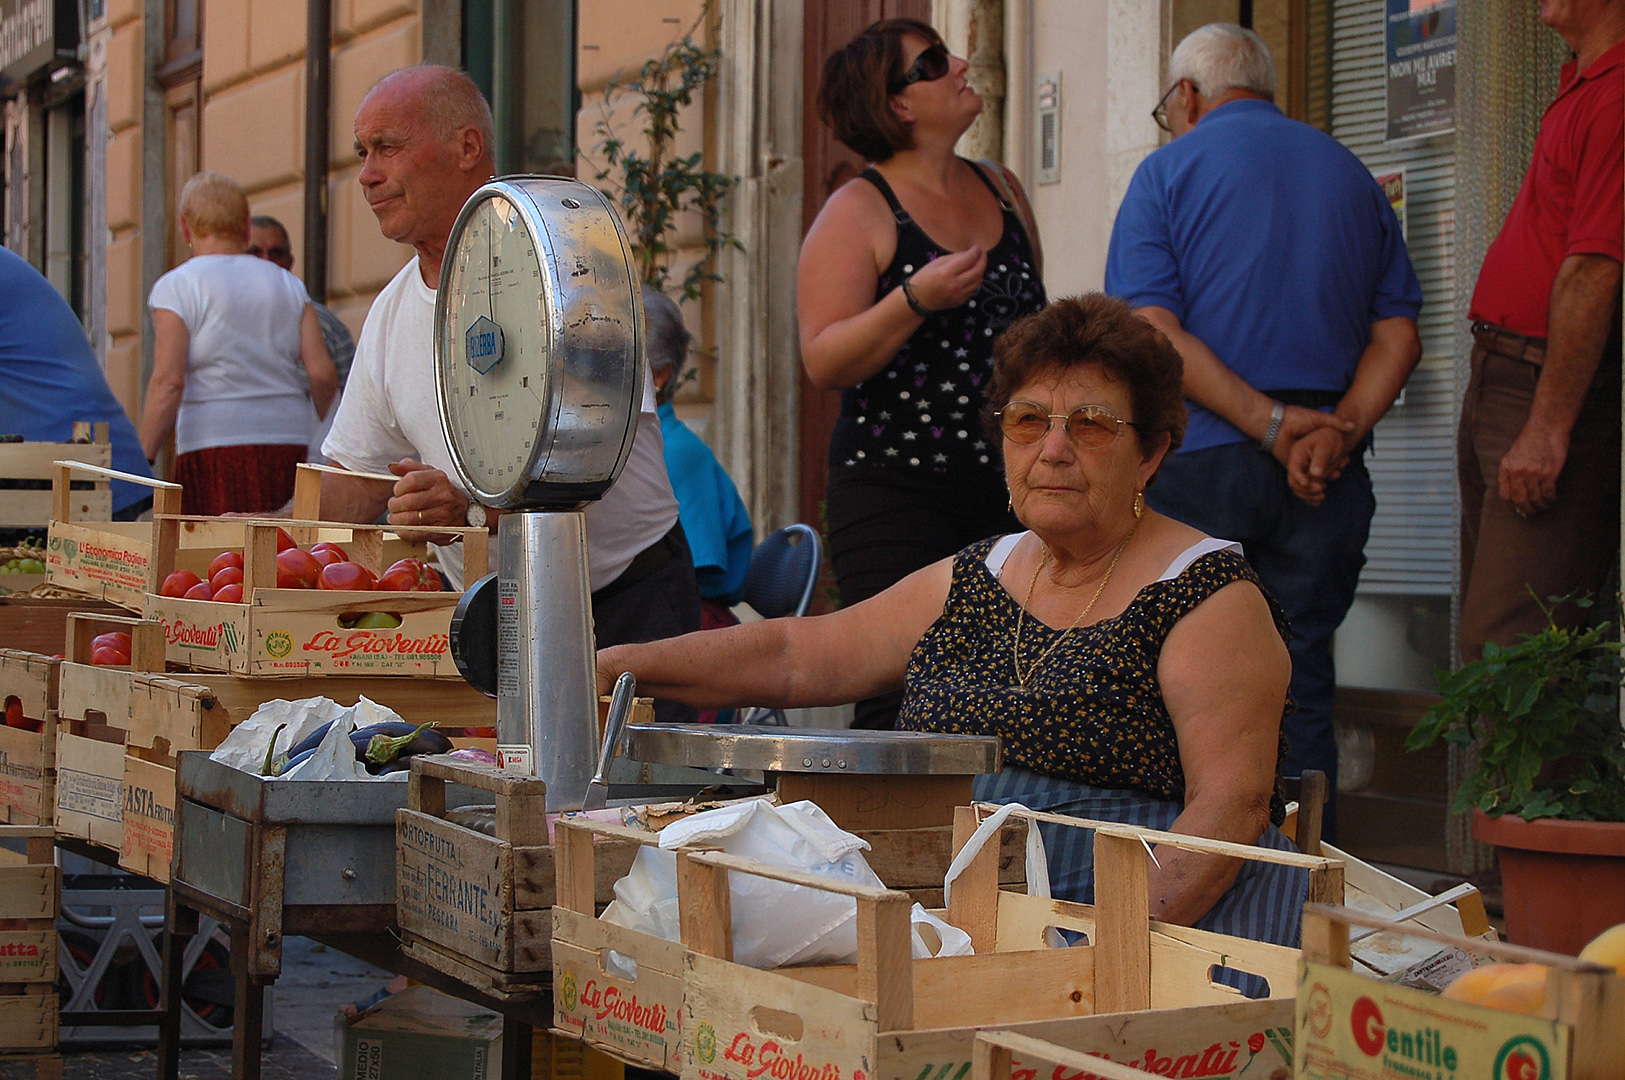 Markt in Popoli (PE, Abruzzen, Itali), Market in Popoli (PE, Abruzzo, Italy)